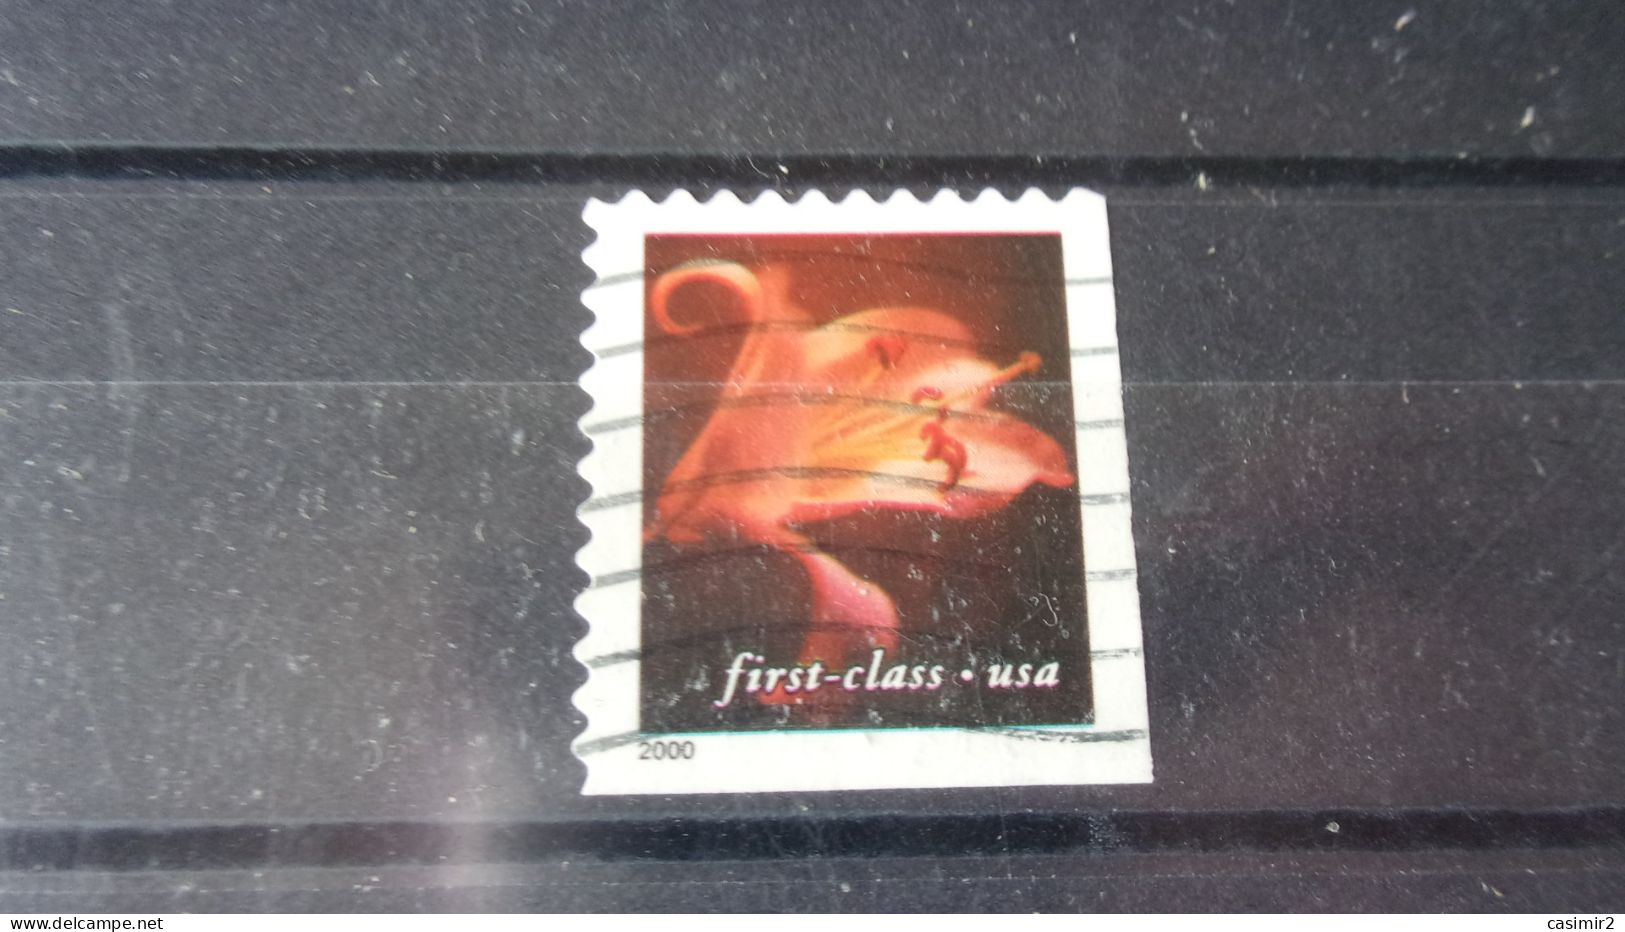 ETATS UNIS YVERT N° 3144 - Used Stamps